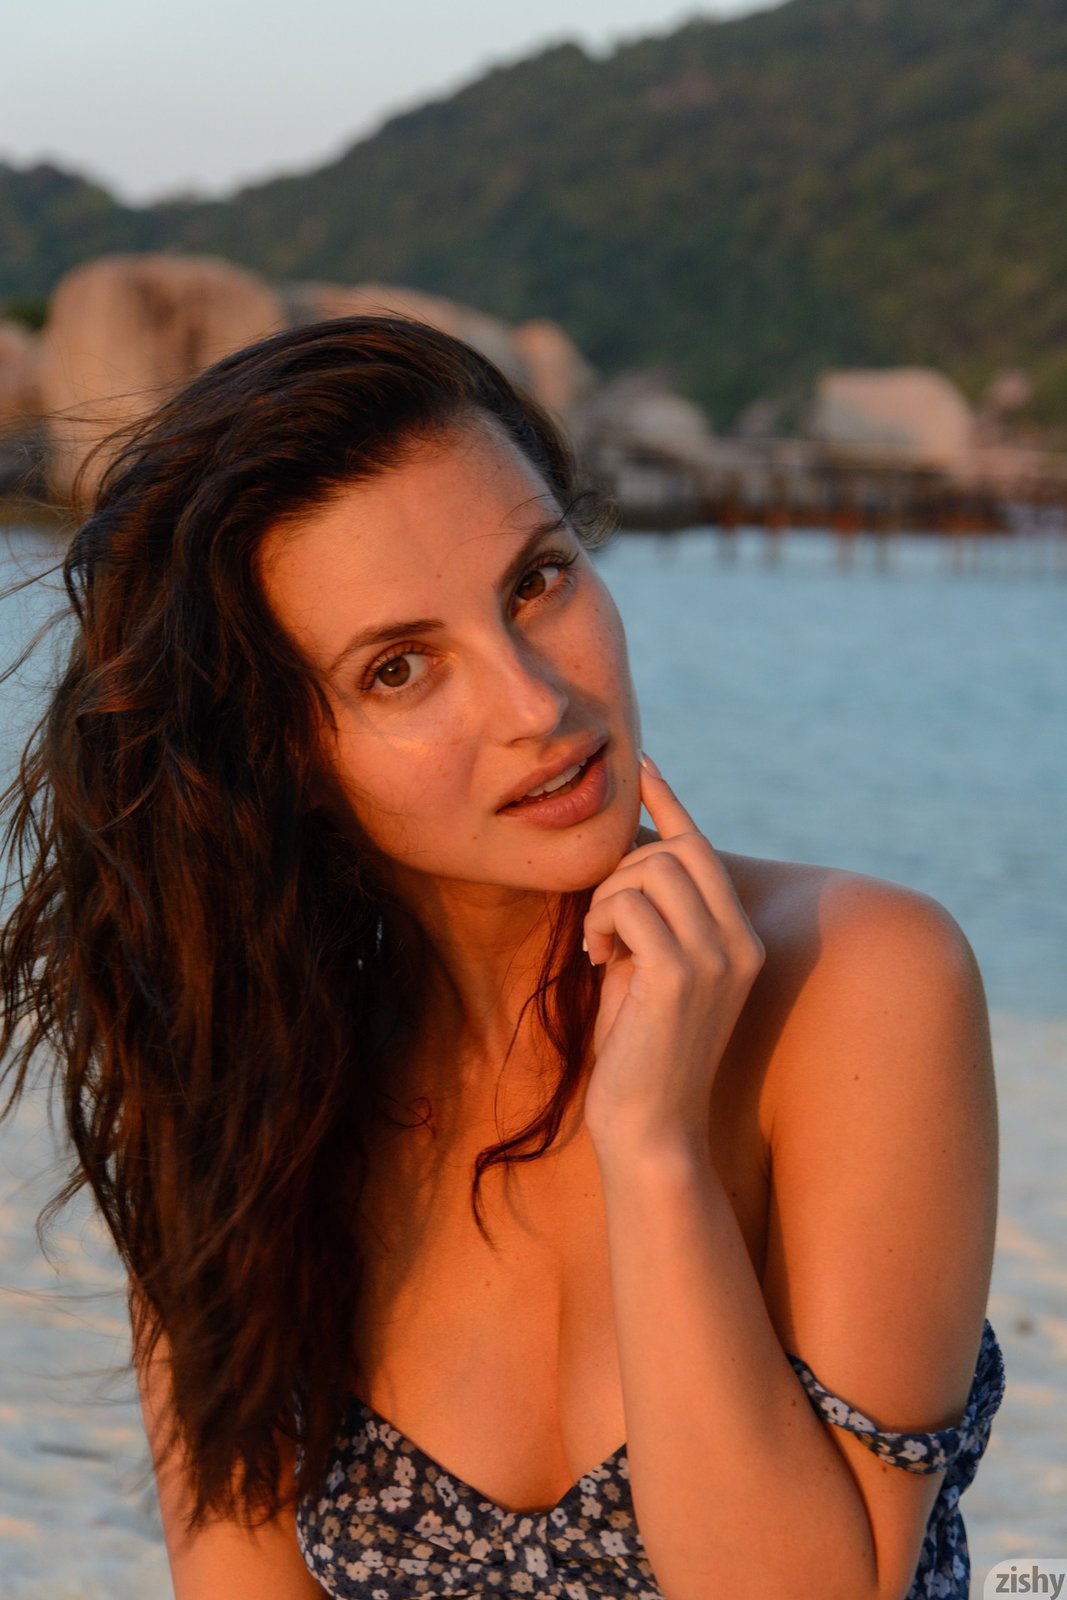 Сексапильная девушка в купальнике нежится на пляже